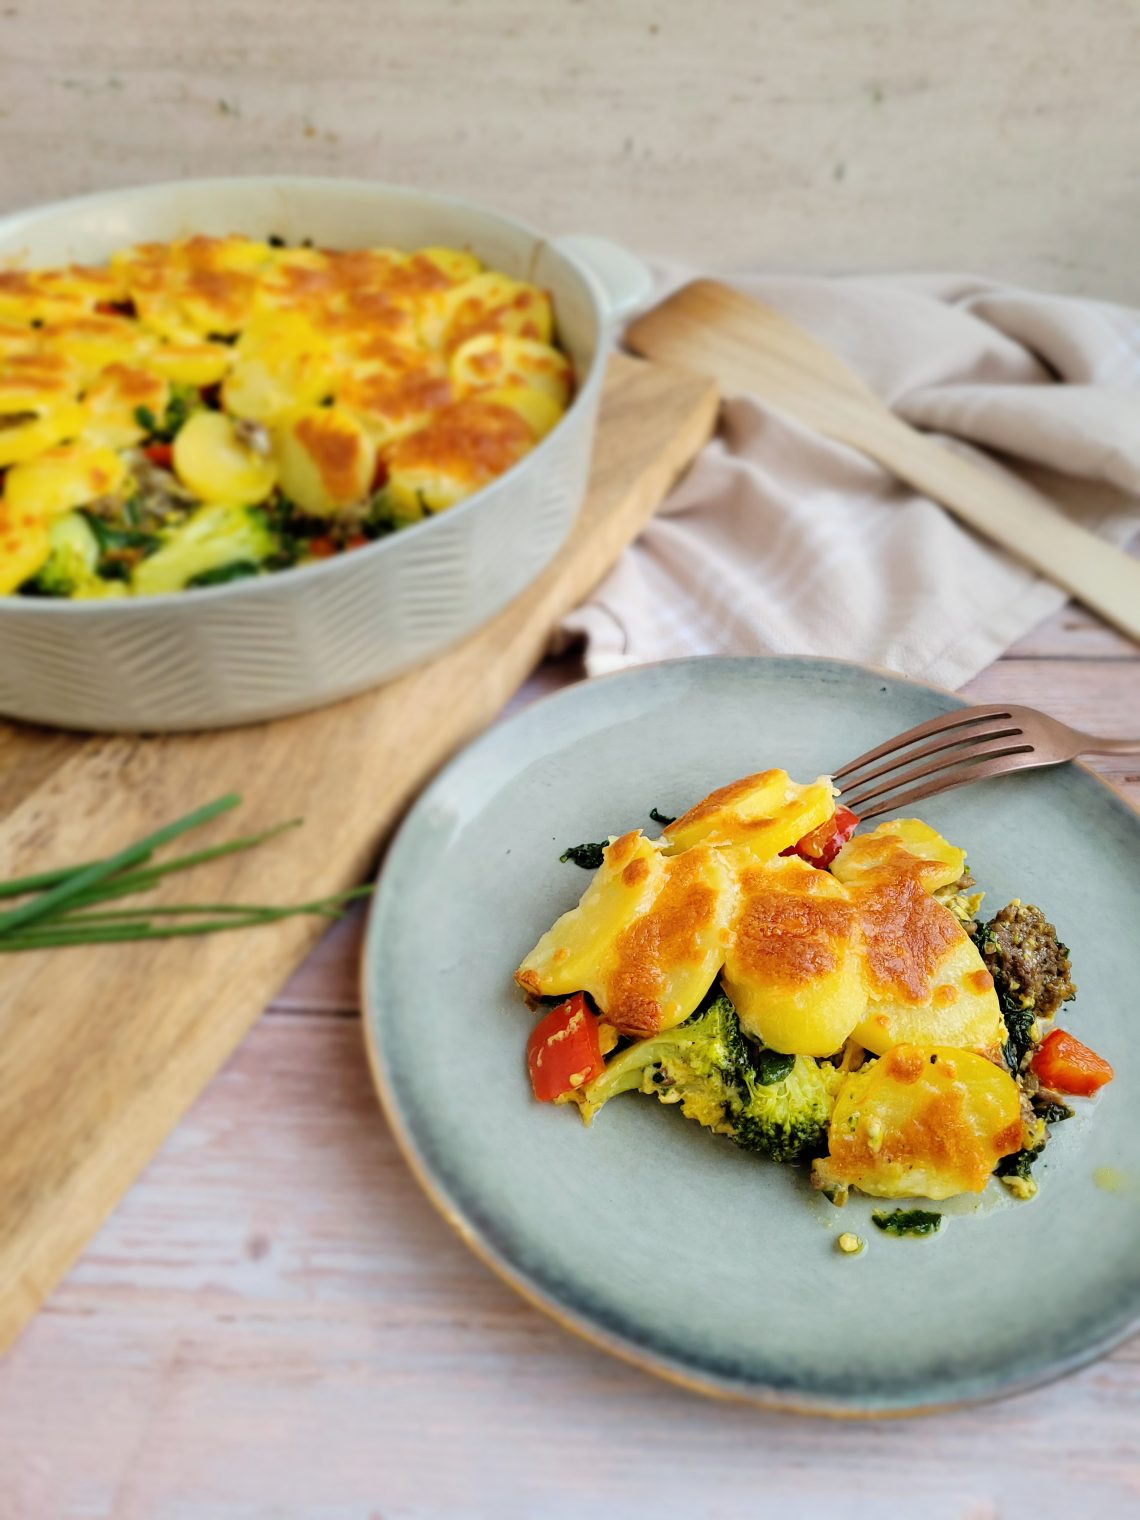 Aardappel ovenschotel met gehakt, broccoli, paprika, spinazie en kaas op een bord (low FODMAP, glutenvrij, lactosevrij)